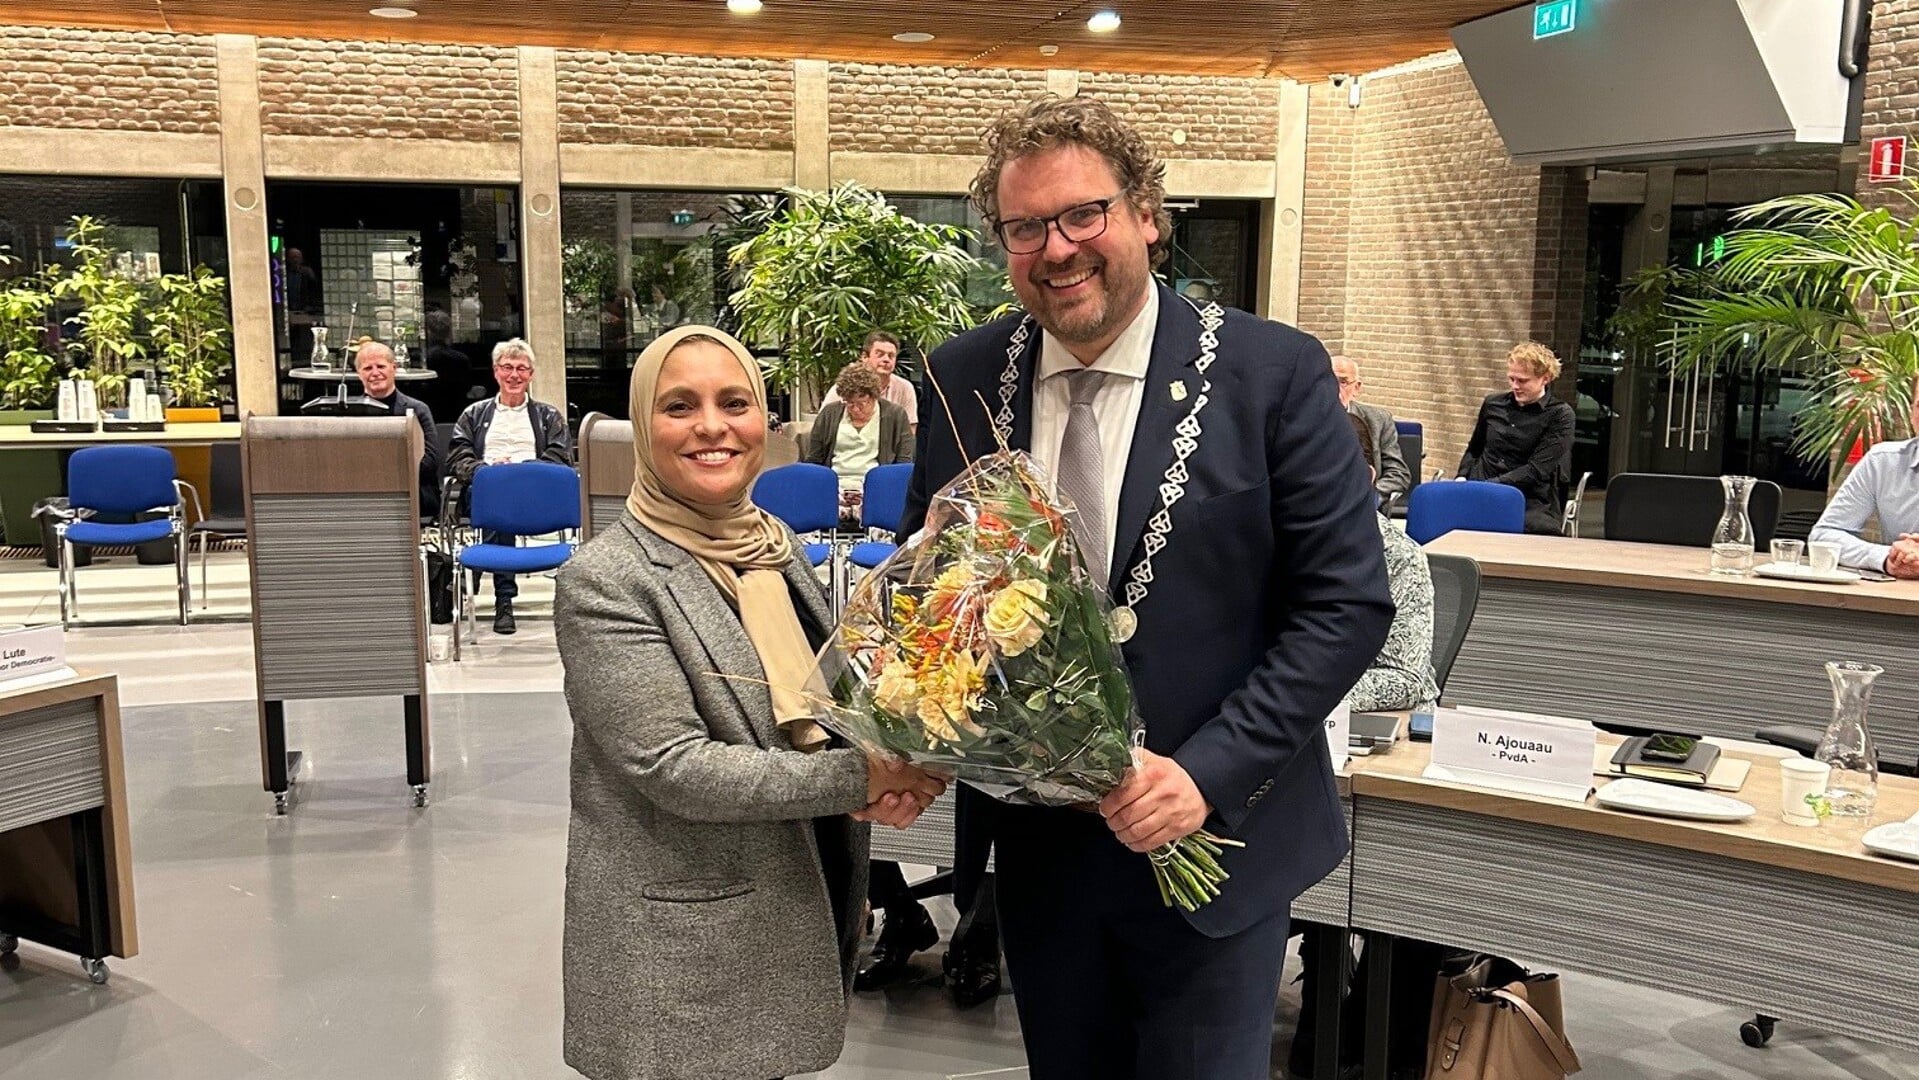 Bloemen voor vertrekkend raadslid Naïma Ajouaau, uit handen van burgemeester Maarten Poorter van Dijk en Waard.